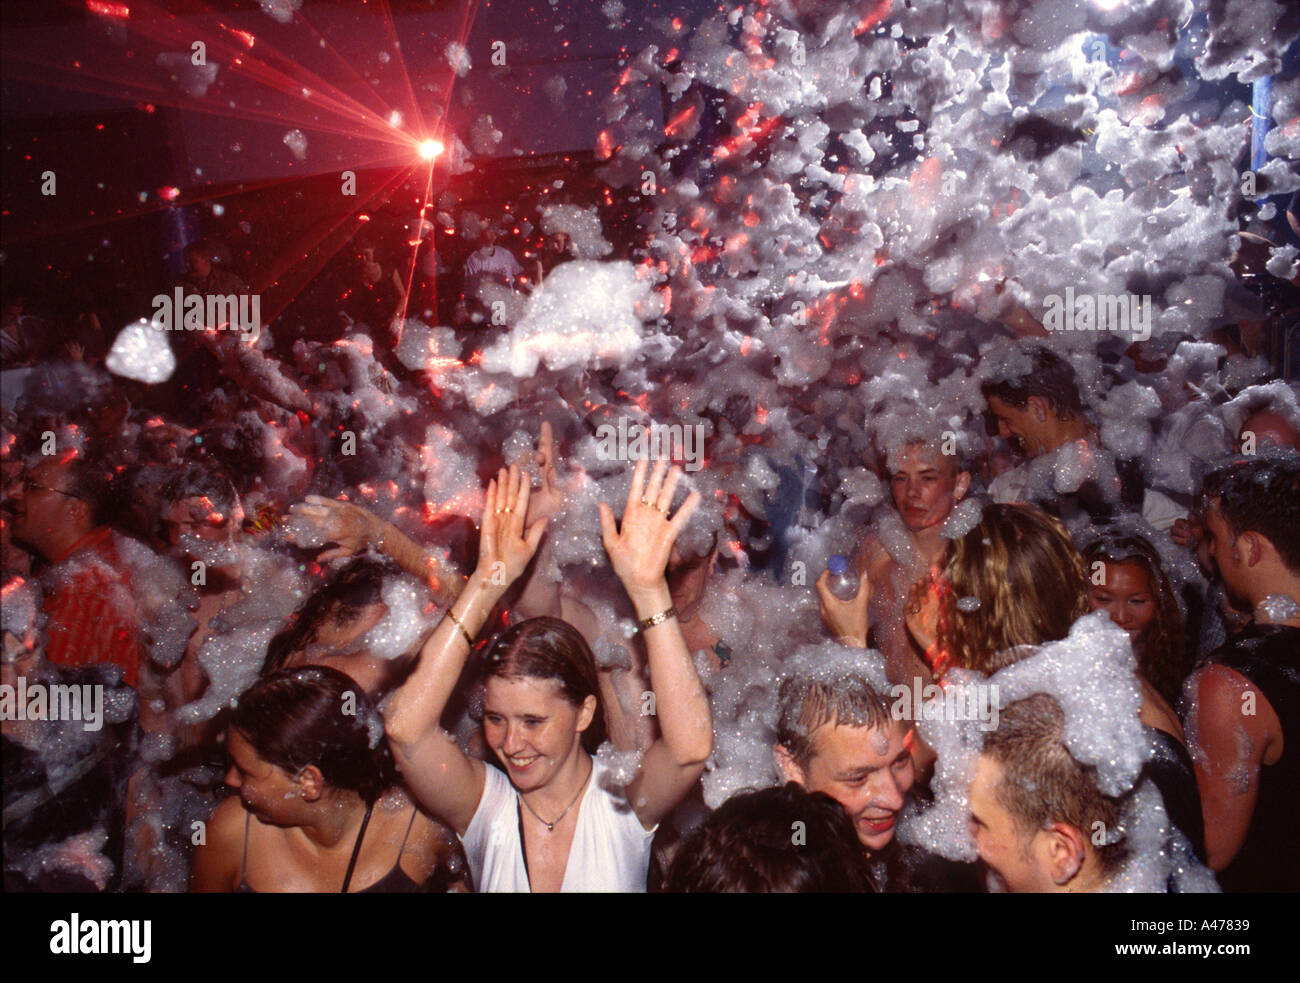 Les jeunes vacanciers appréciant la mousse party au Eden nightclub Ibiza Espagne Banque D'Images